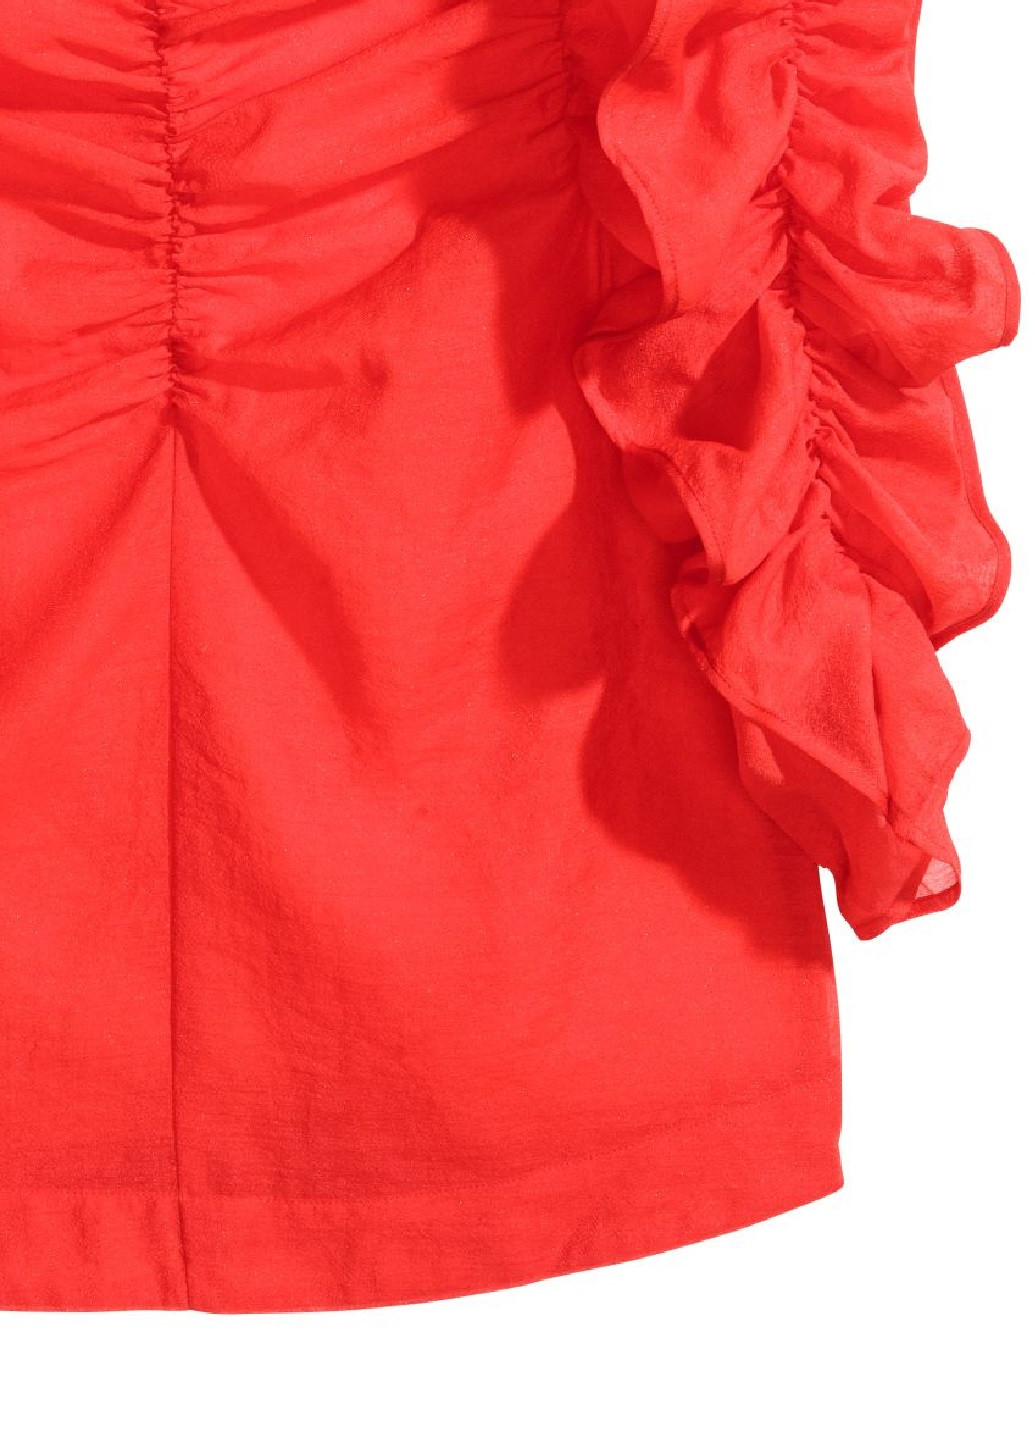 Красная летняя блузка из жоржета H&M